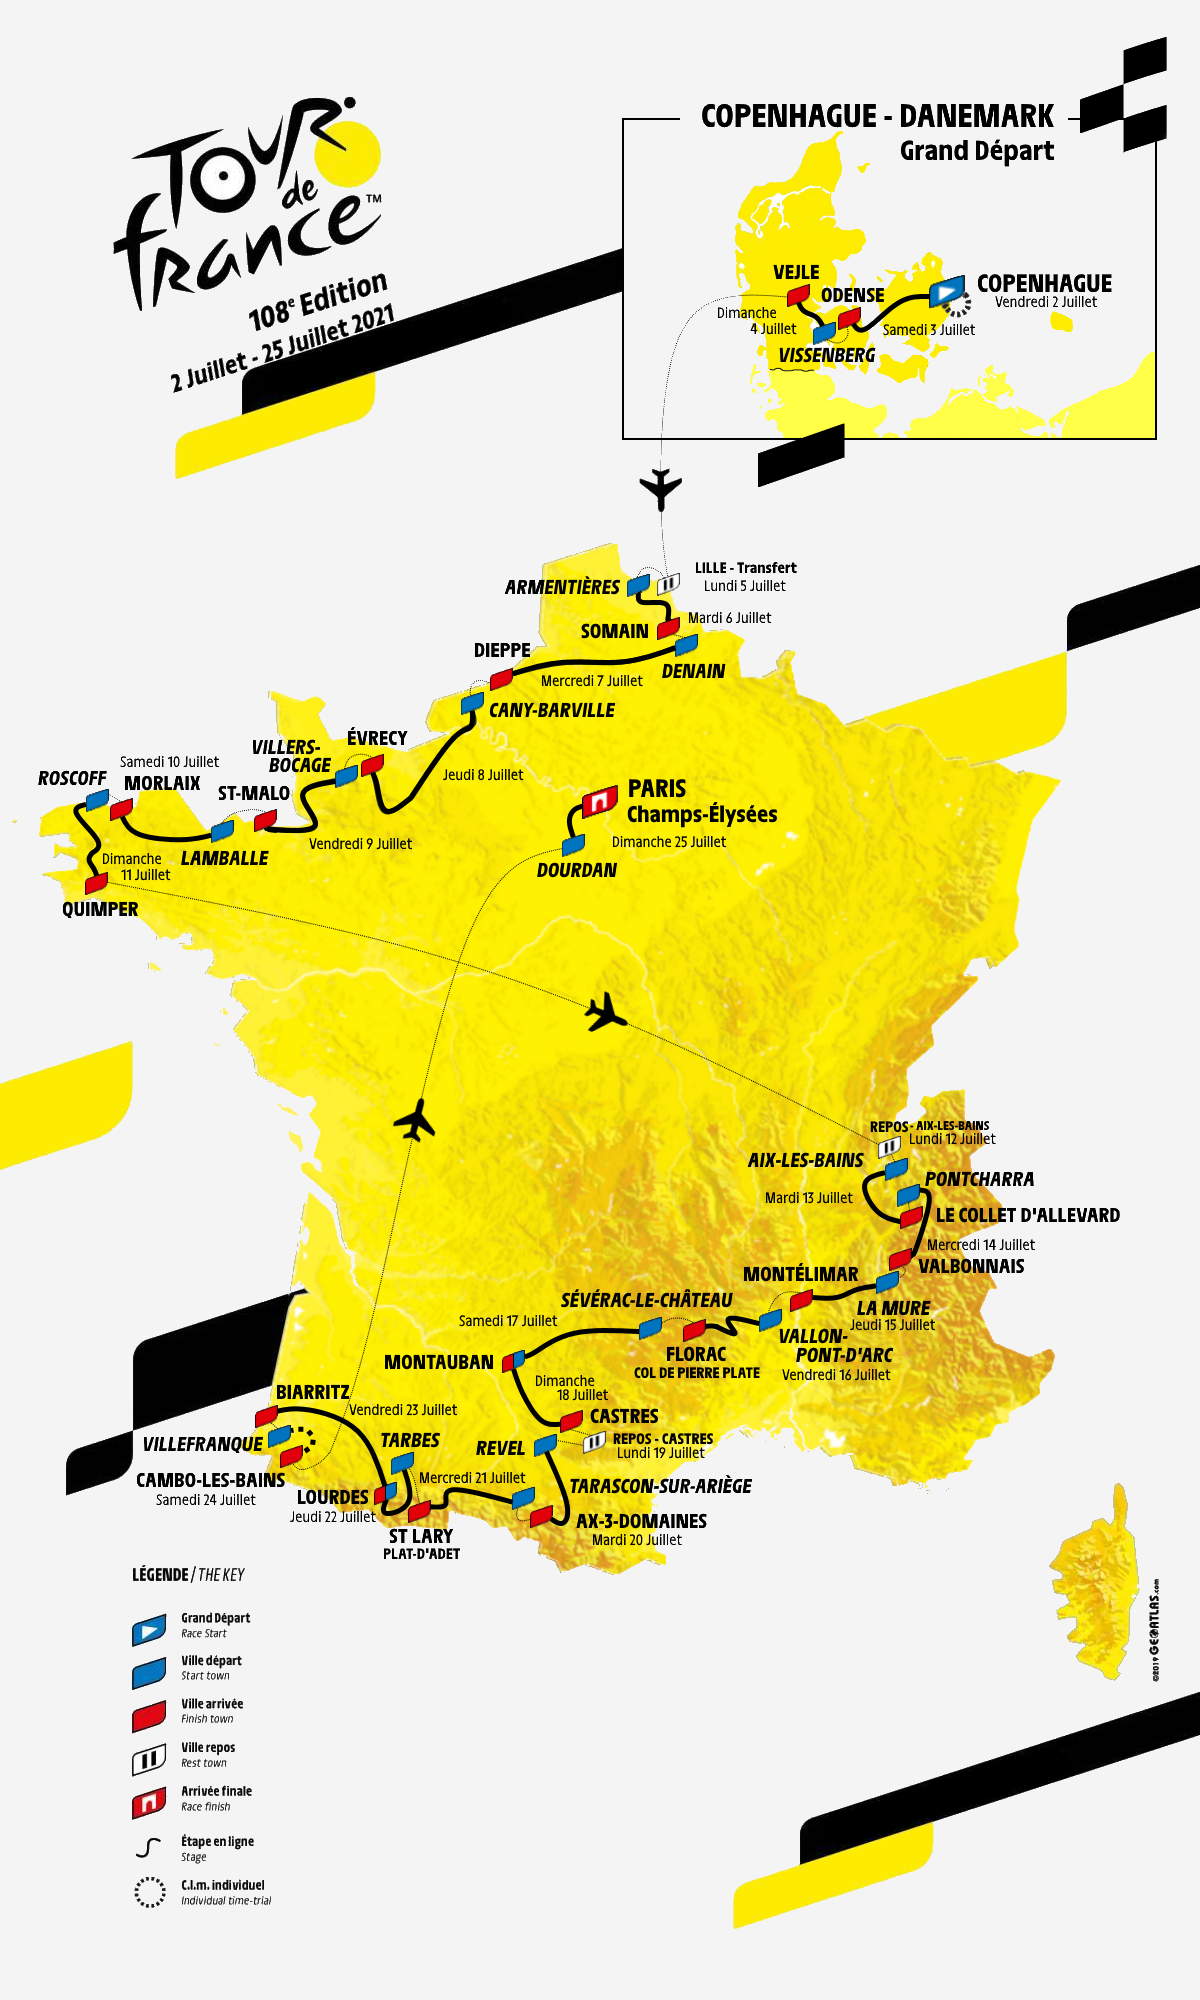 [Concours] Tour de France 2022 - Résultats p.96 - Page 12 - Le